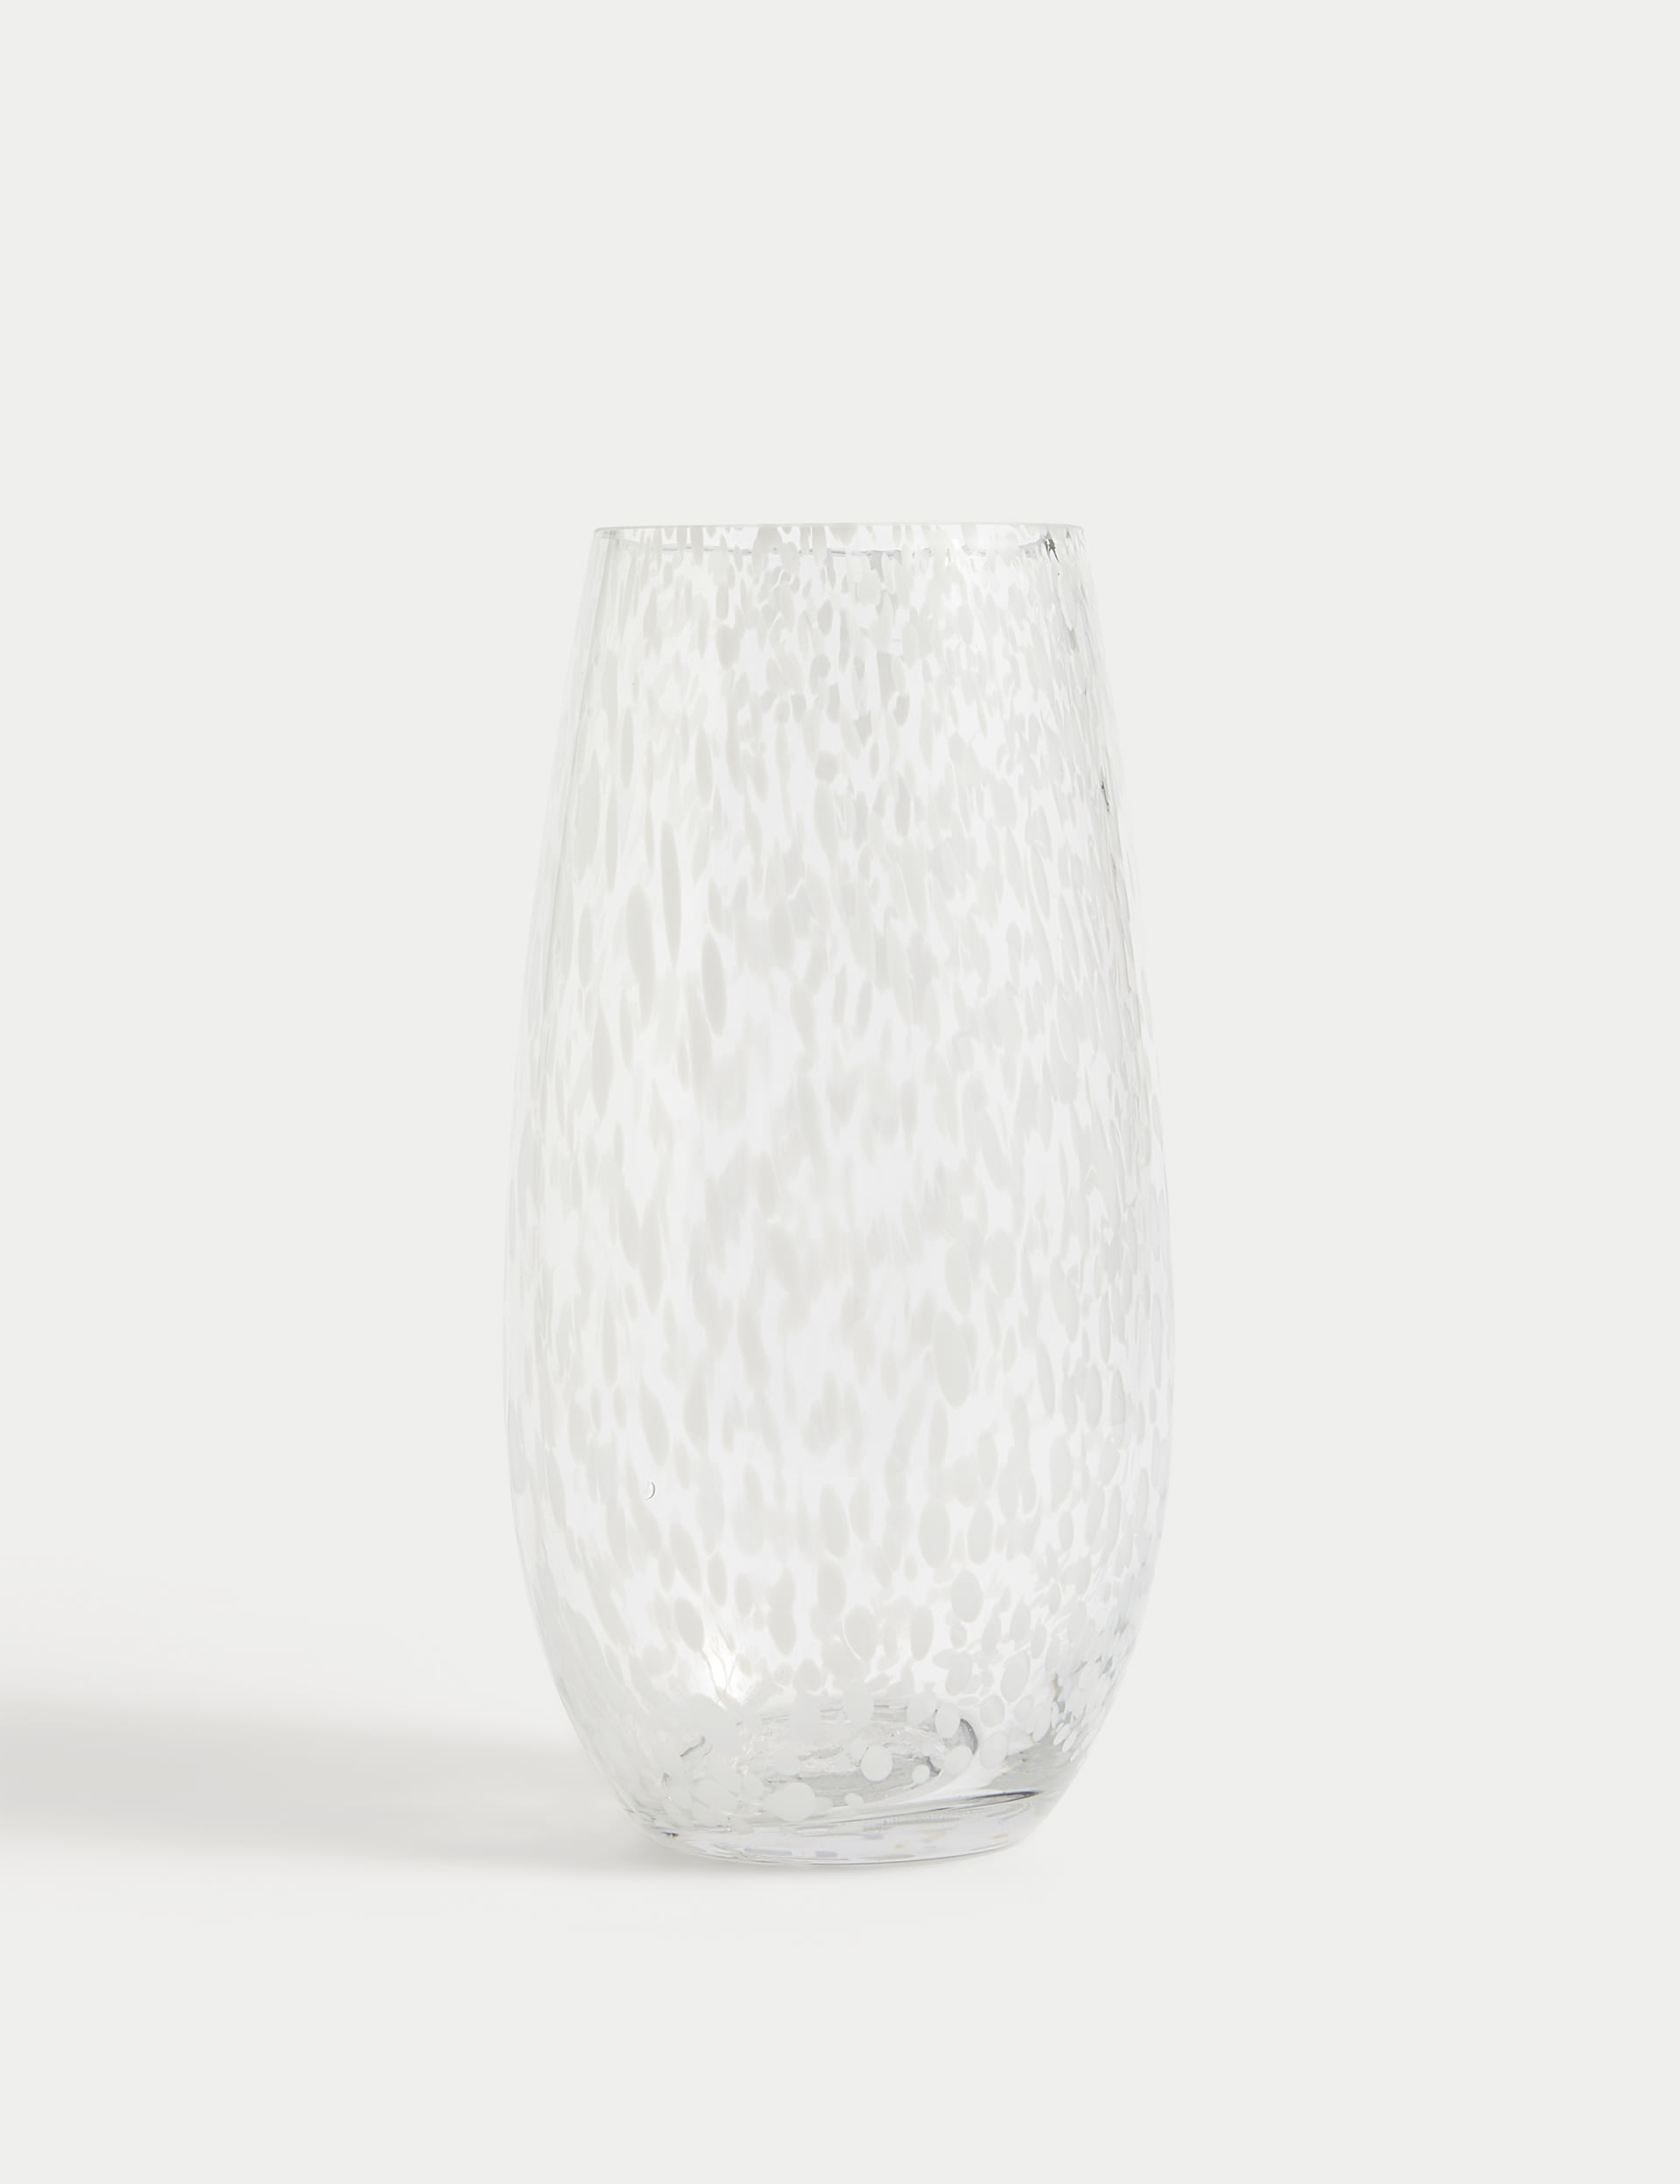 Confetti Glass Vase 2 of 4